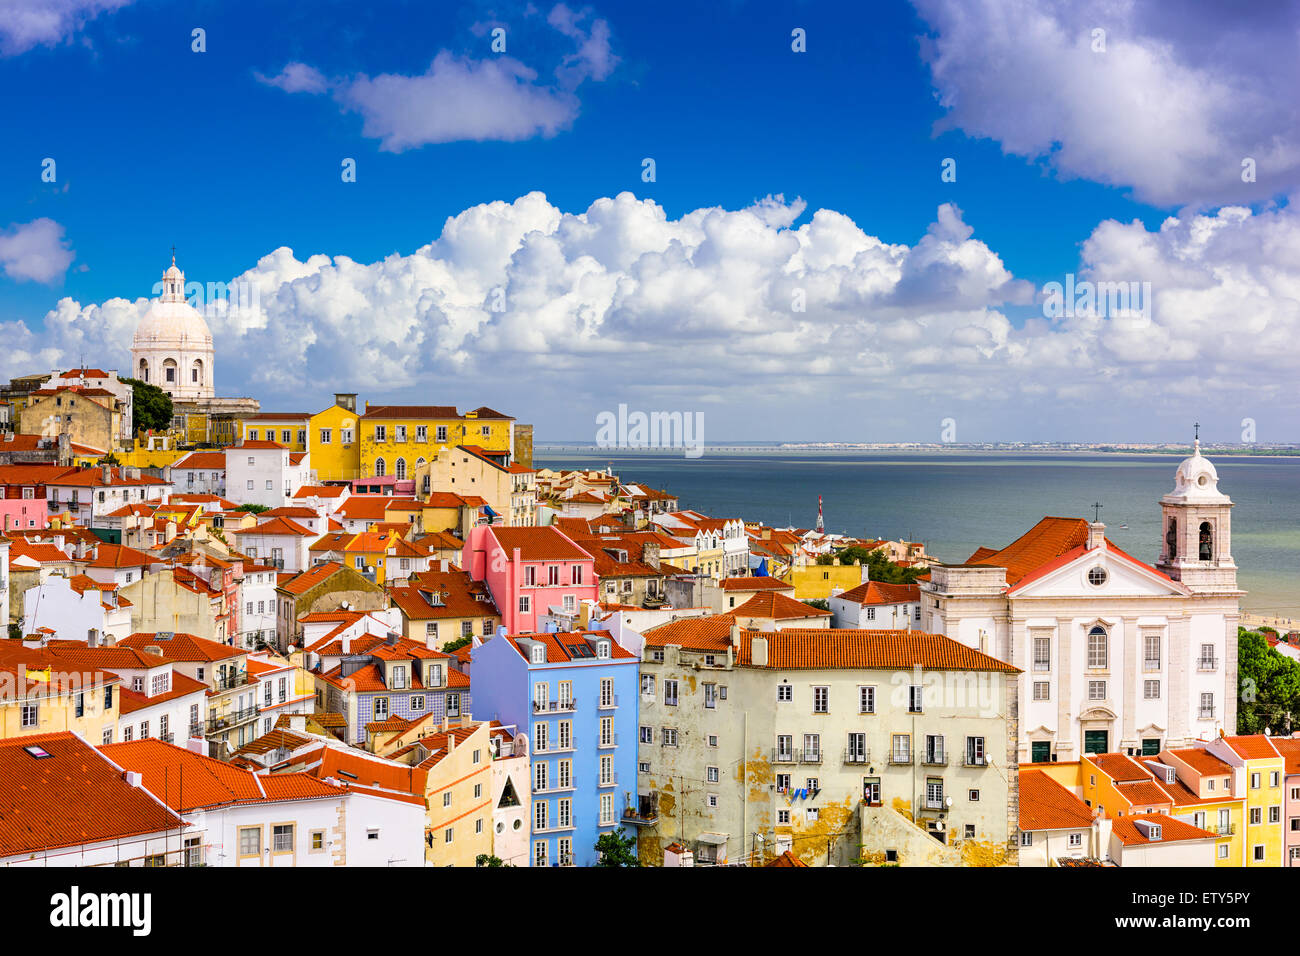 Lisbonne Portugal Paysage Urbain Dans Le Quartier D Alfama Photo Stock Alamy